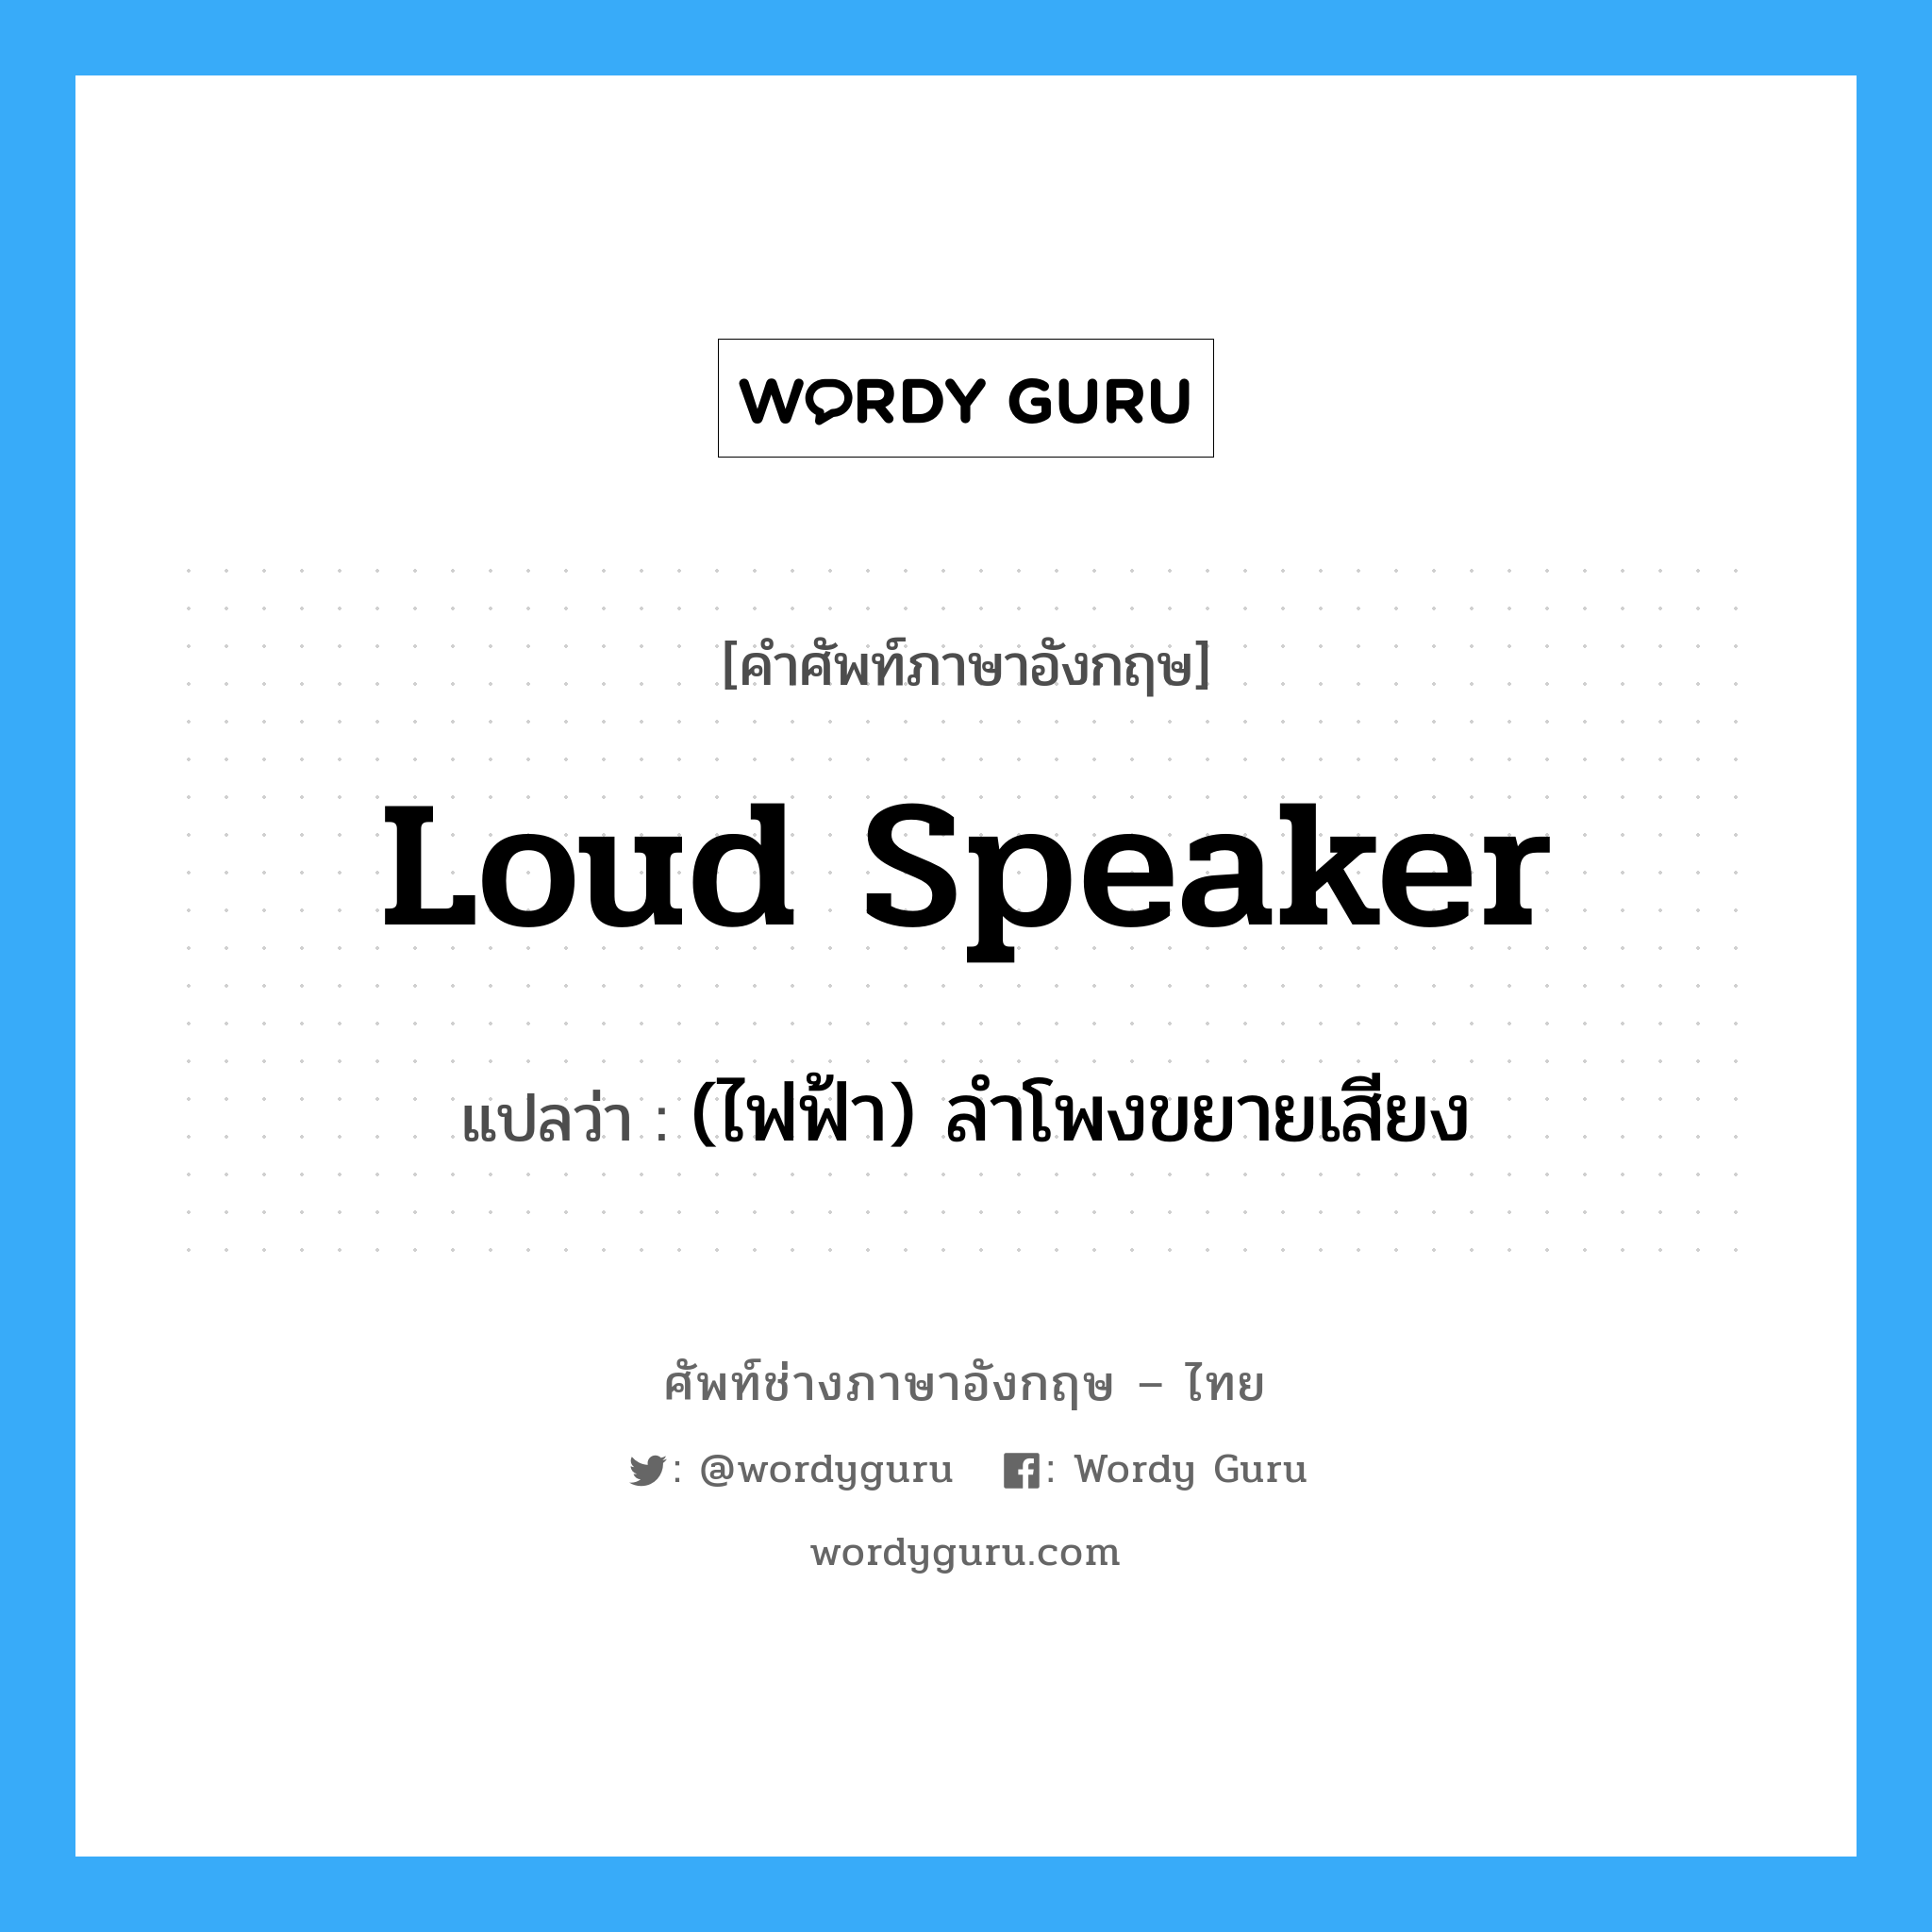 (ไฟฟ้า) ลำโพงขยายเสียง ภาษาอังกฤษ?, คำศัพท์ช่างภาษาอังกฤษ - ไทย (ไฟฟ้า) ลำโพงขยายเสียง คำศัพท์ภาษาอังกฤษ (ไฟฟ้า) ลำโพงขยายเสียง แปลว่า loud speaker